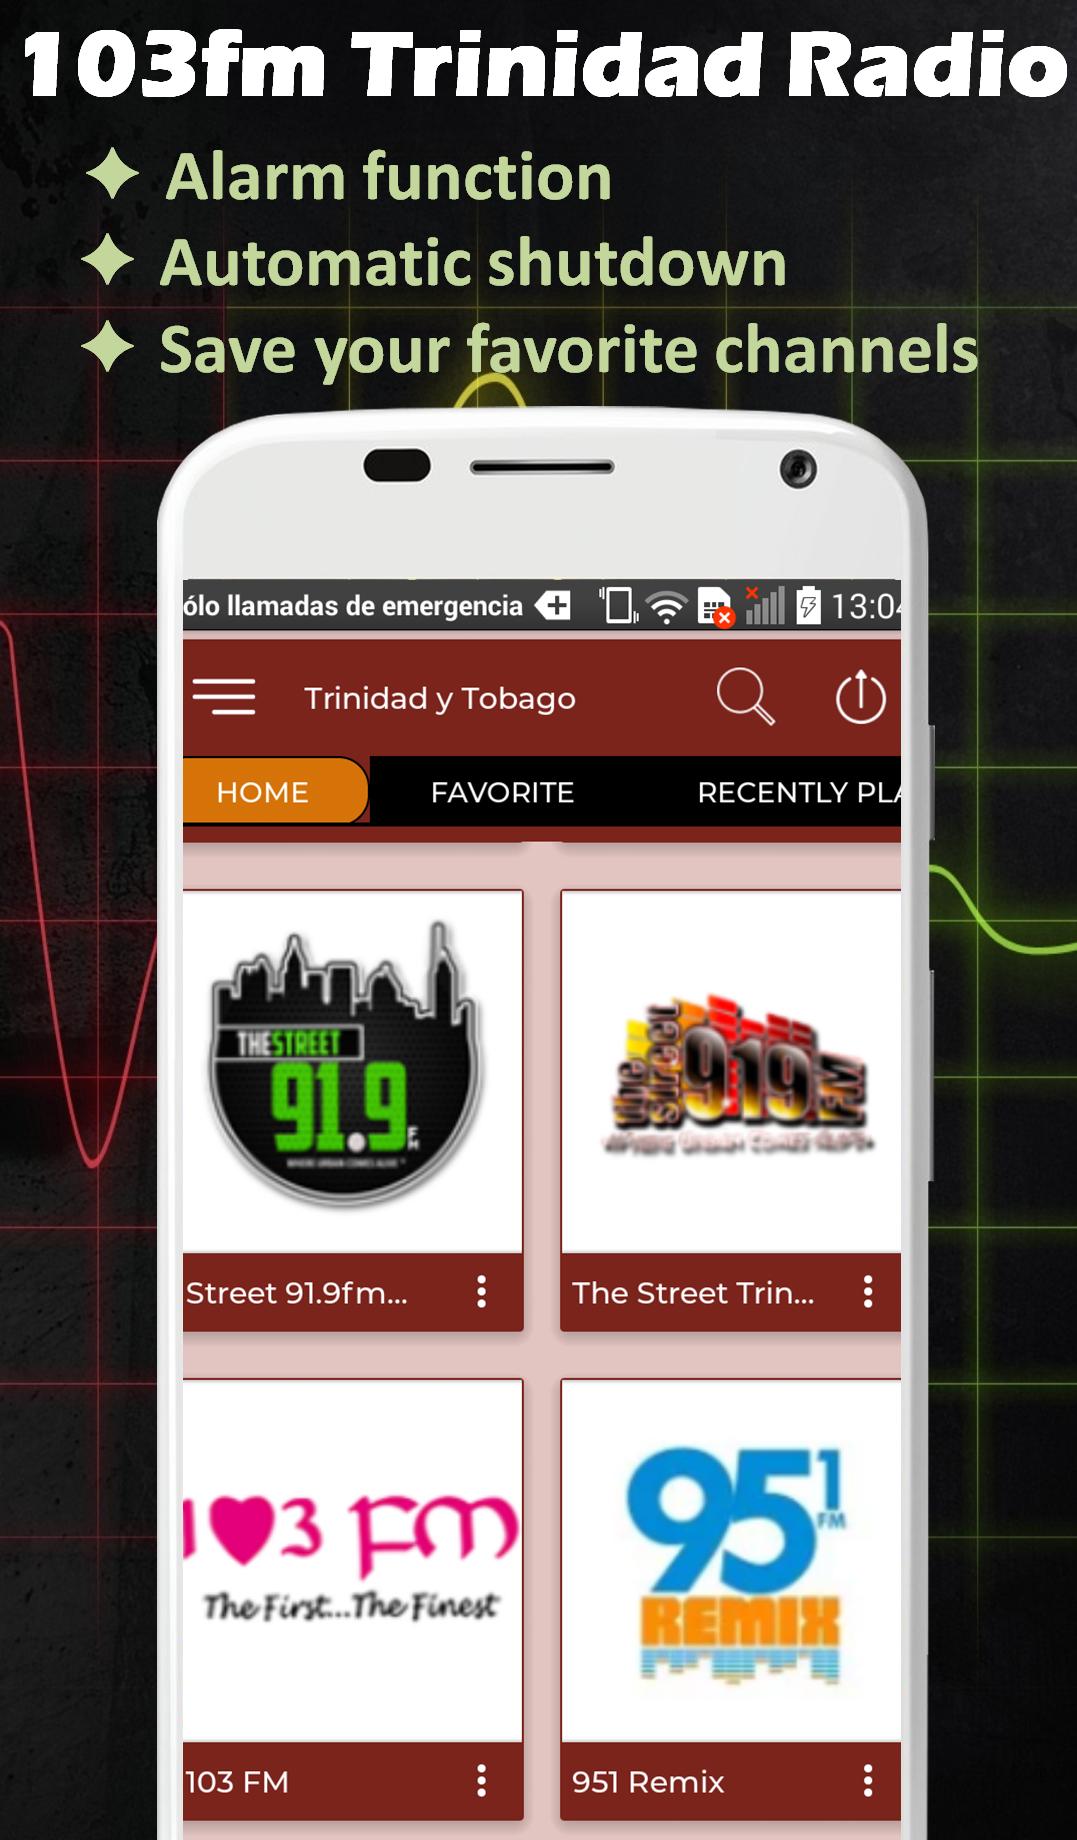 103fm Trinidad Radio Stations Trinidad and Tobago APK per Android Download